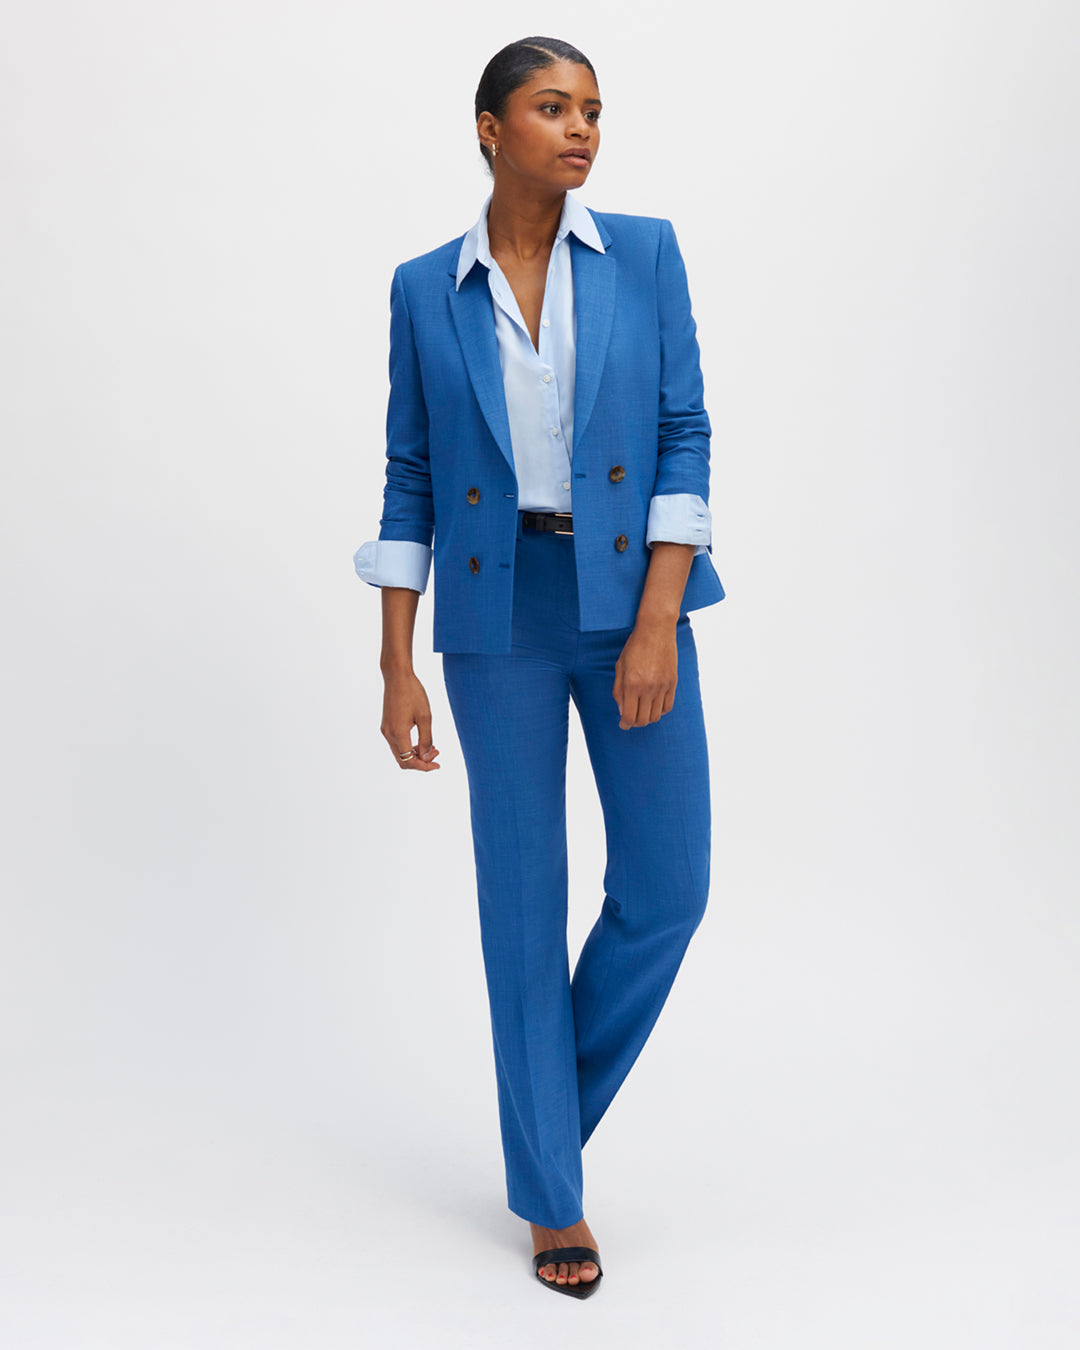 pantalon-bleu-azur-coupe-droite-taille-haute-plis-devant-fermeture-zip-avec-crochet-17H10-tailleurs-pour-femme-paris-